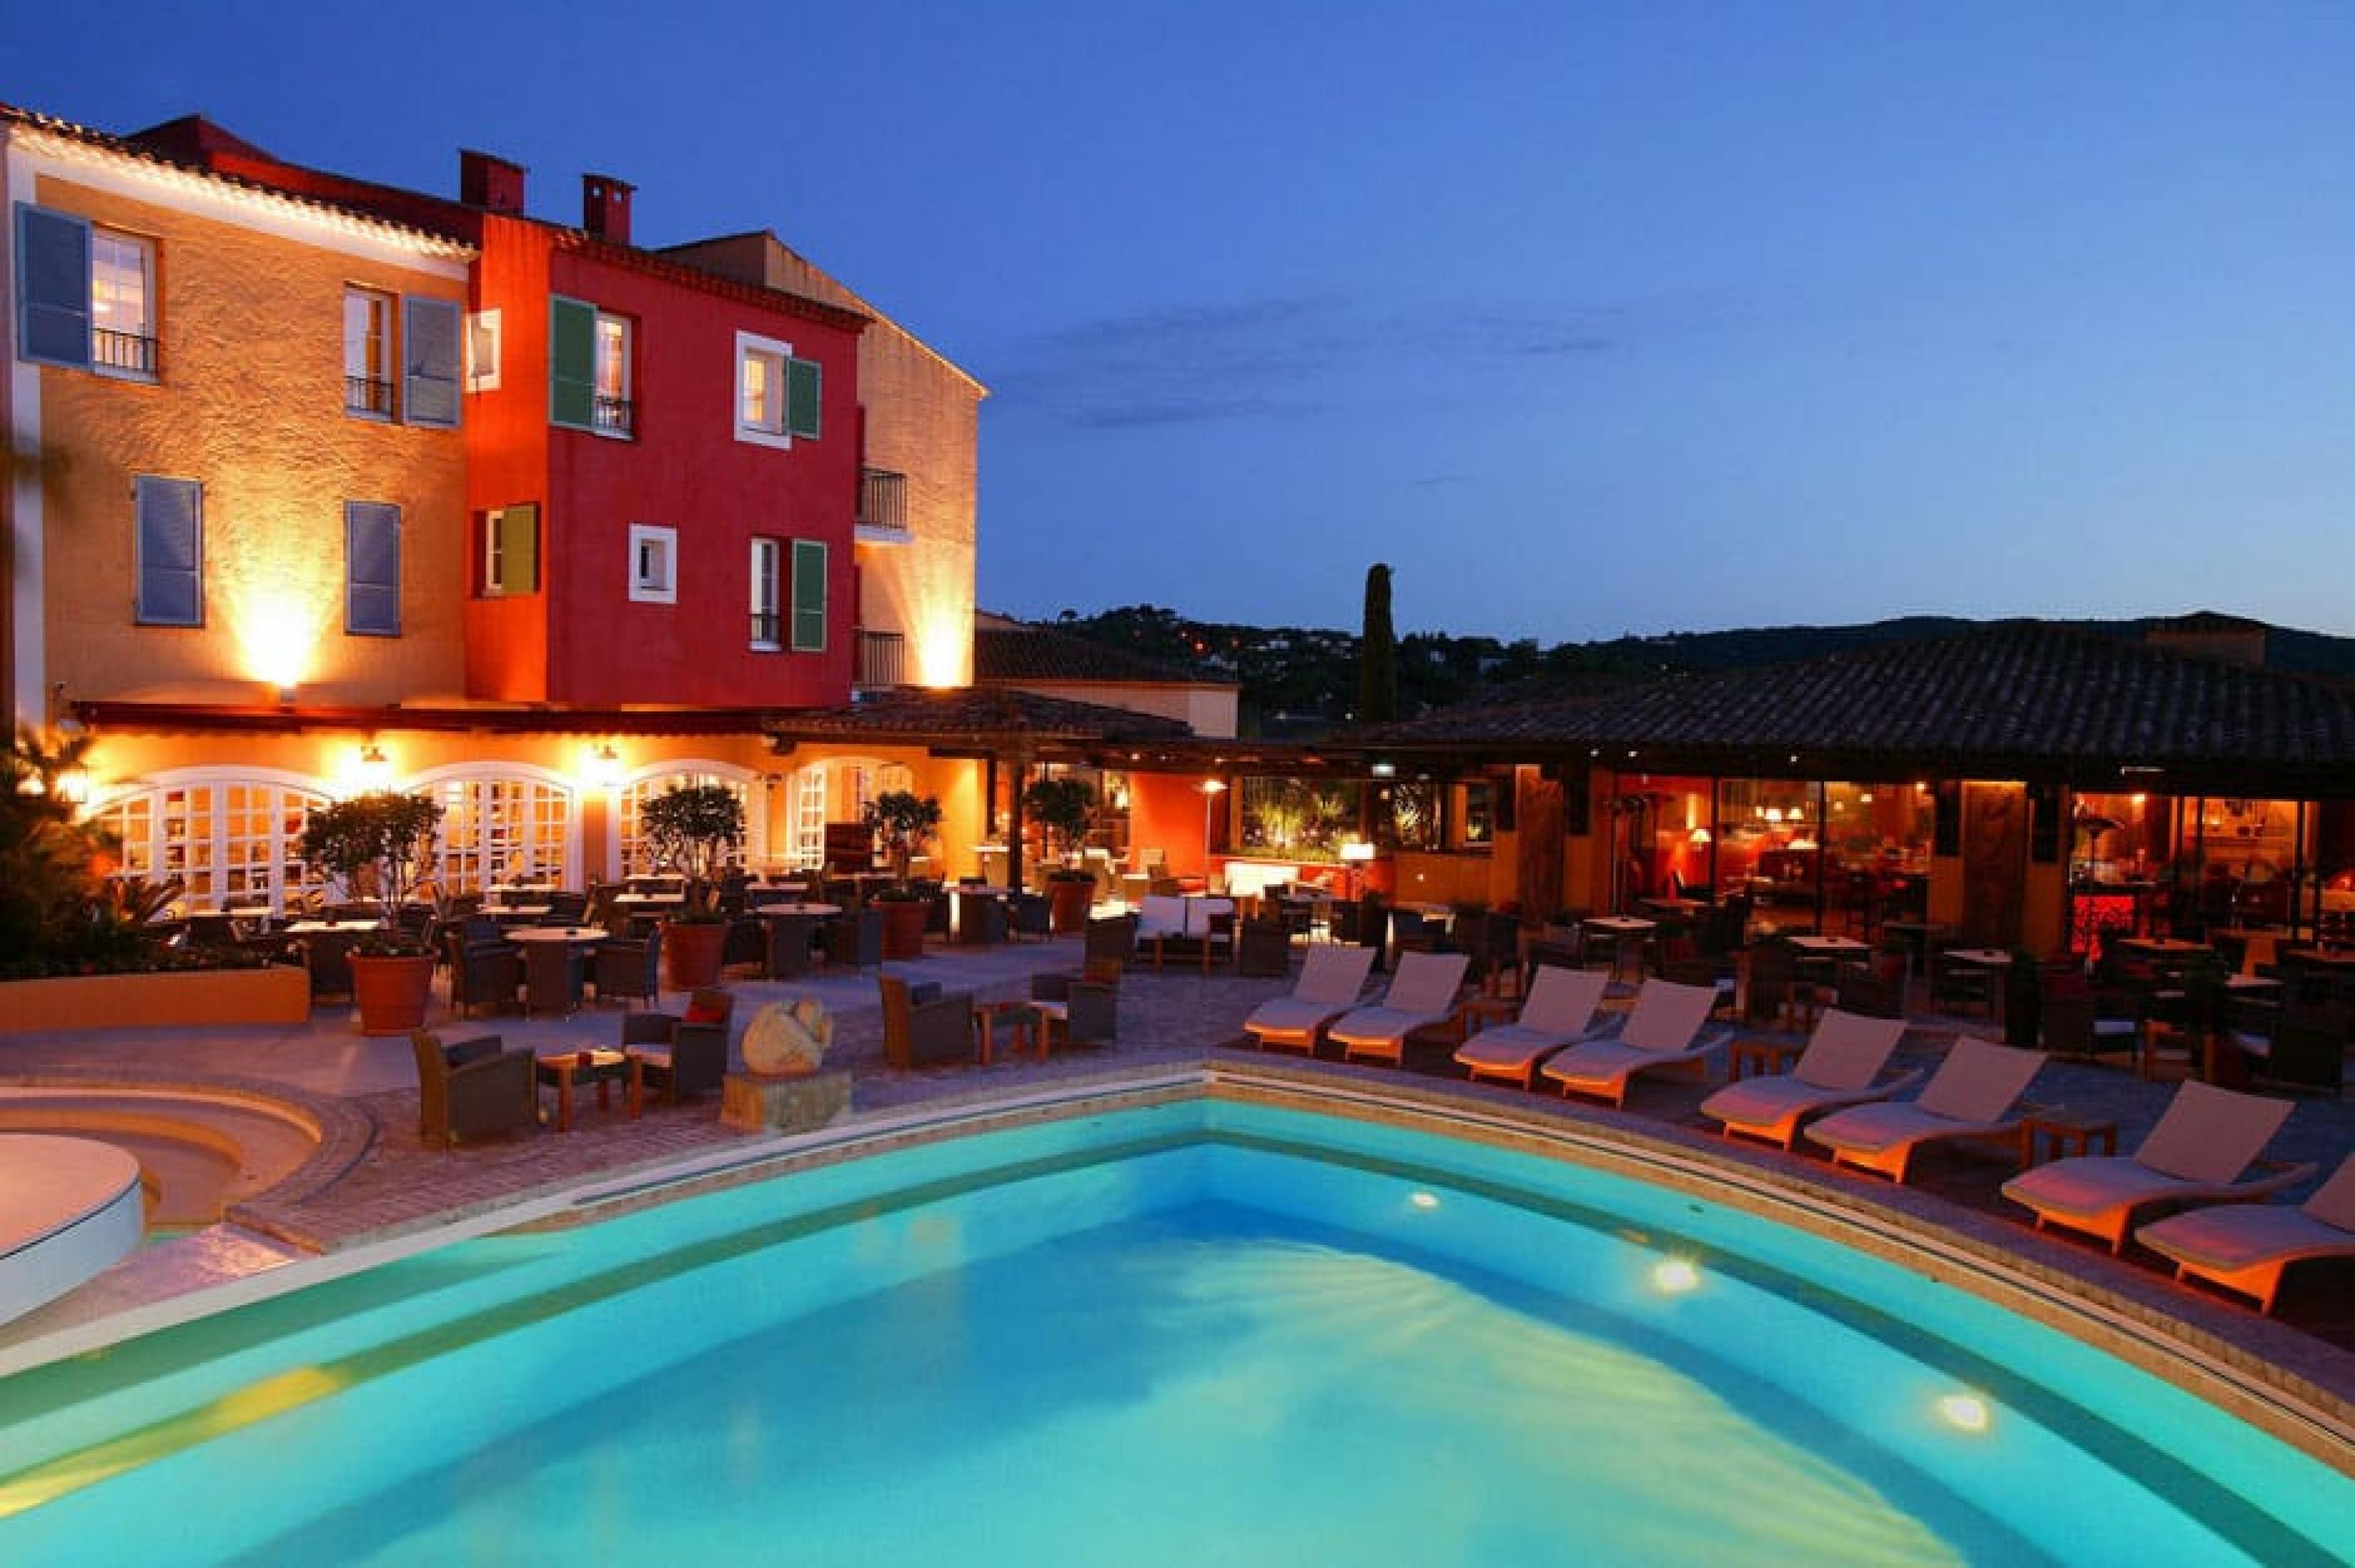 Pool Lounge at Hôtel Byblos, St. Tropez, France